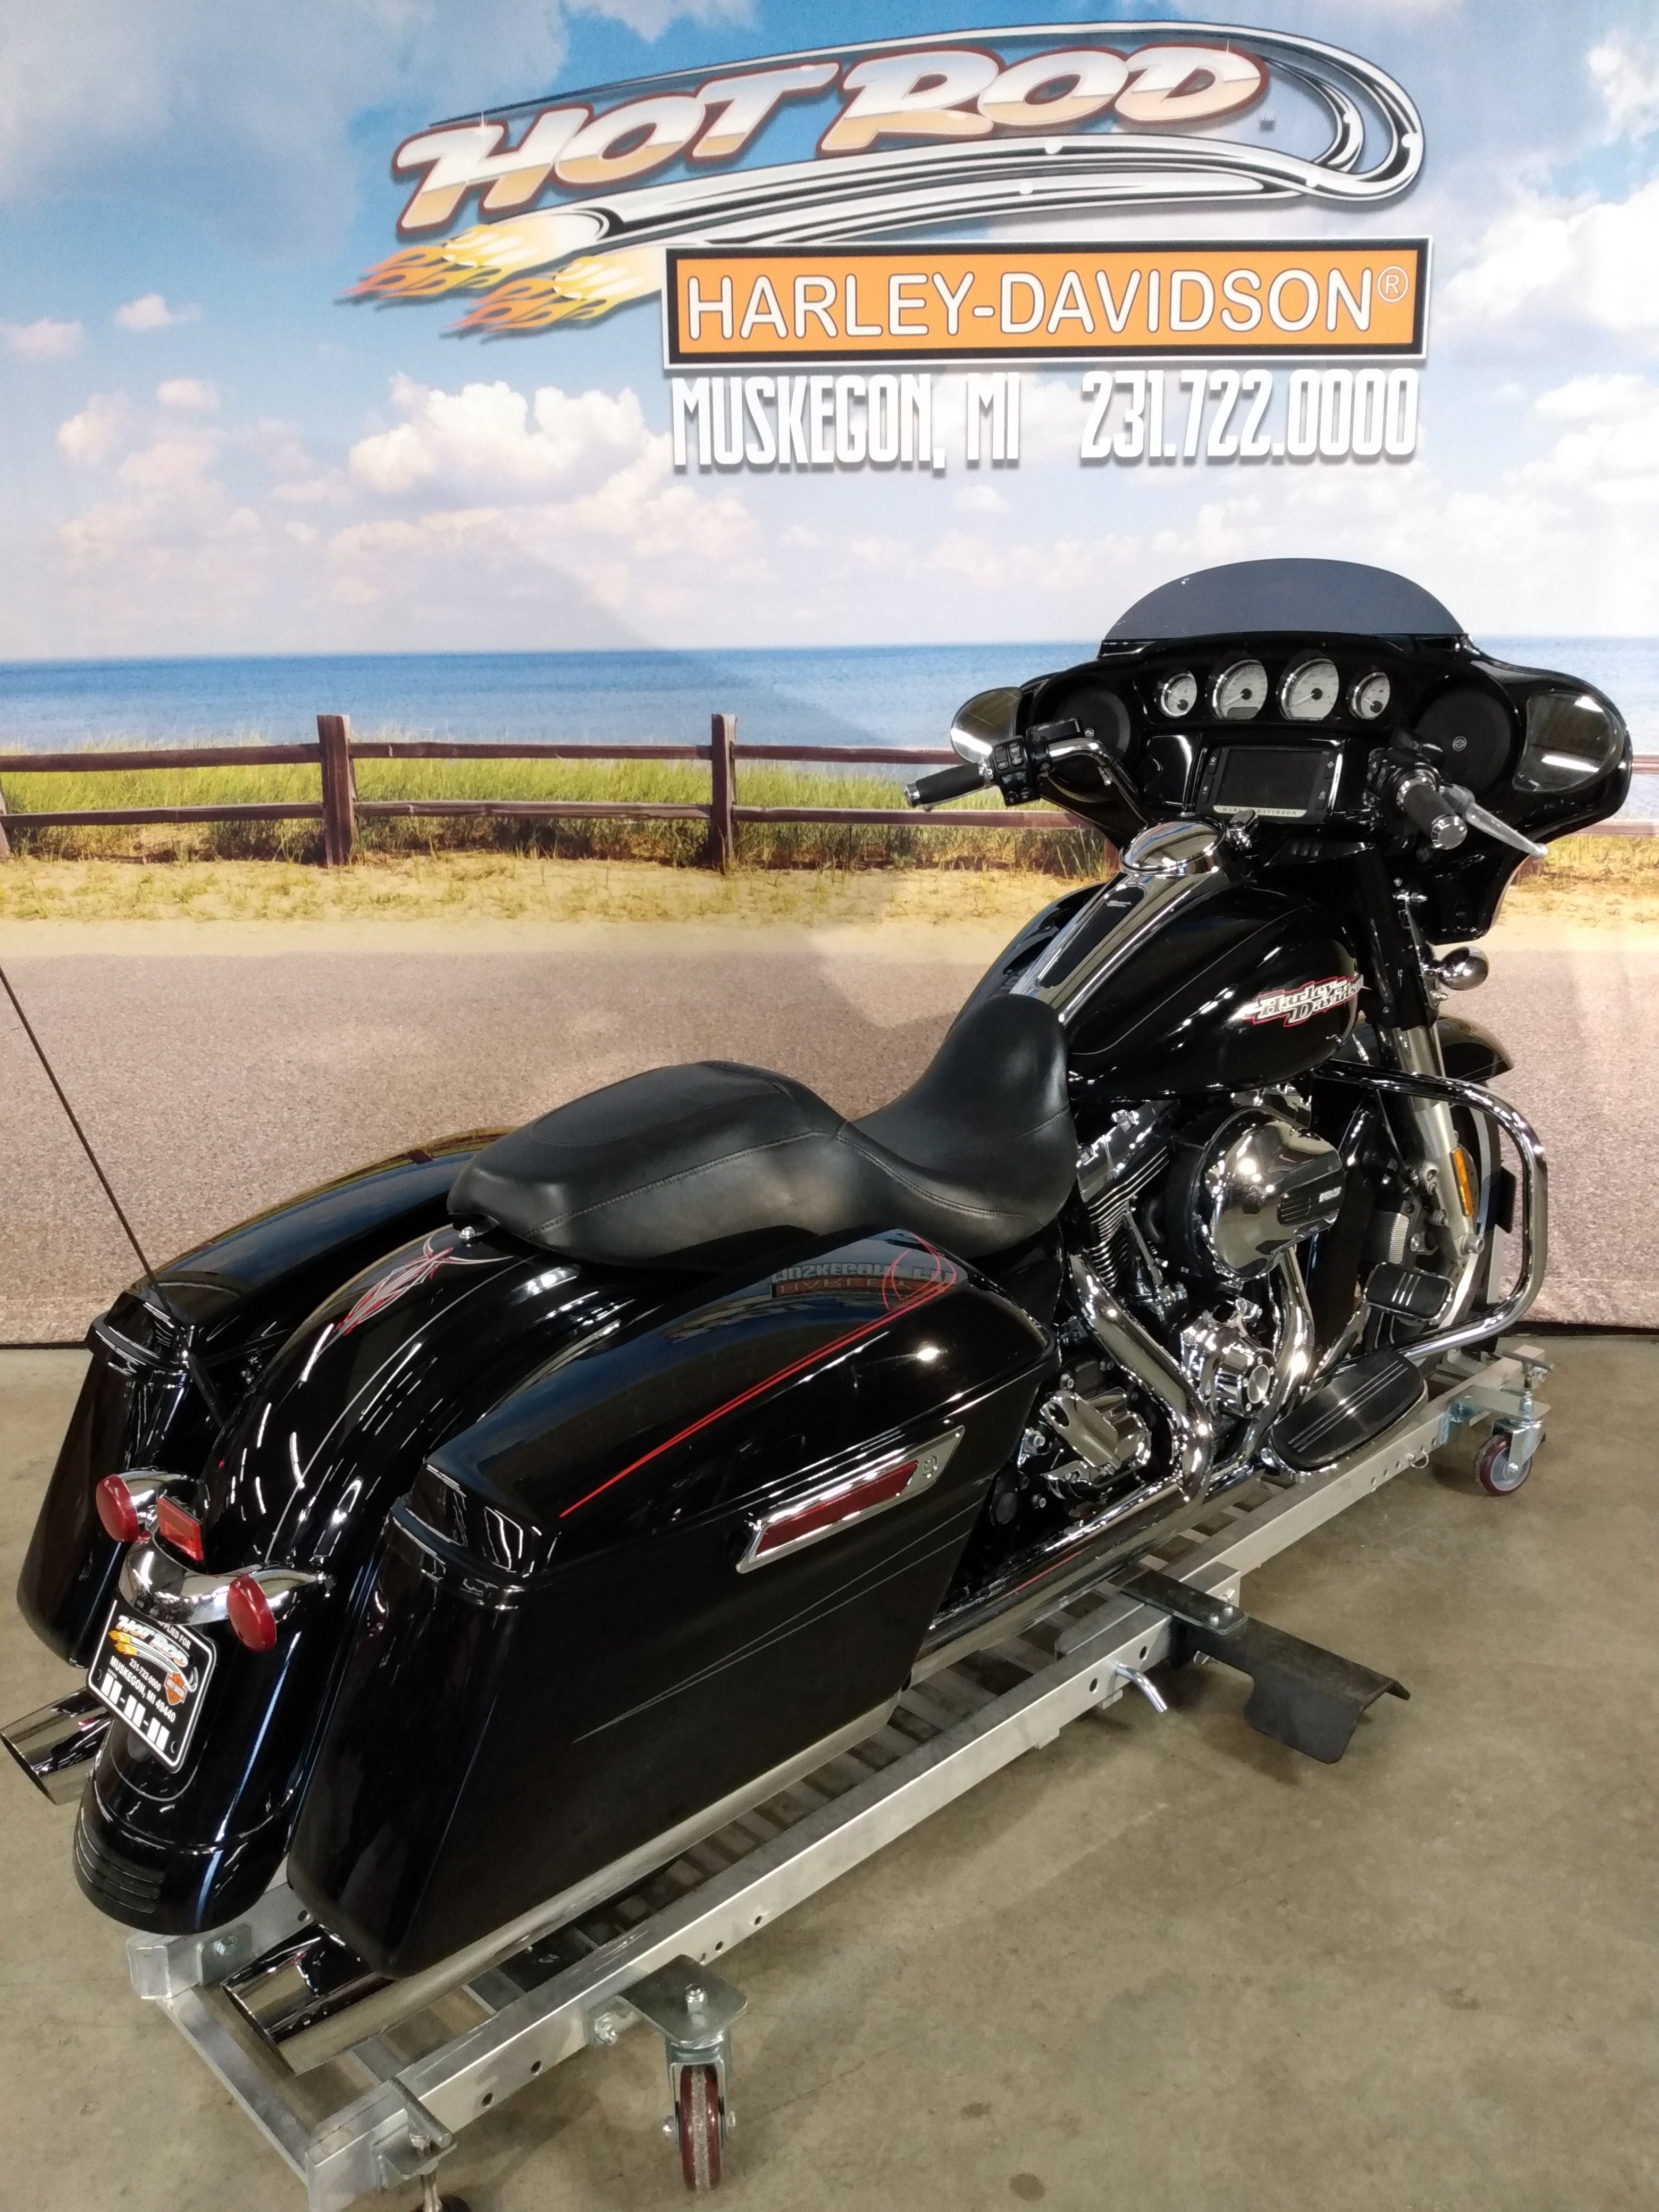 2014 Harley-Davidson Street Glide Special at Hot Rod Harley-Davidson